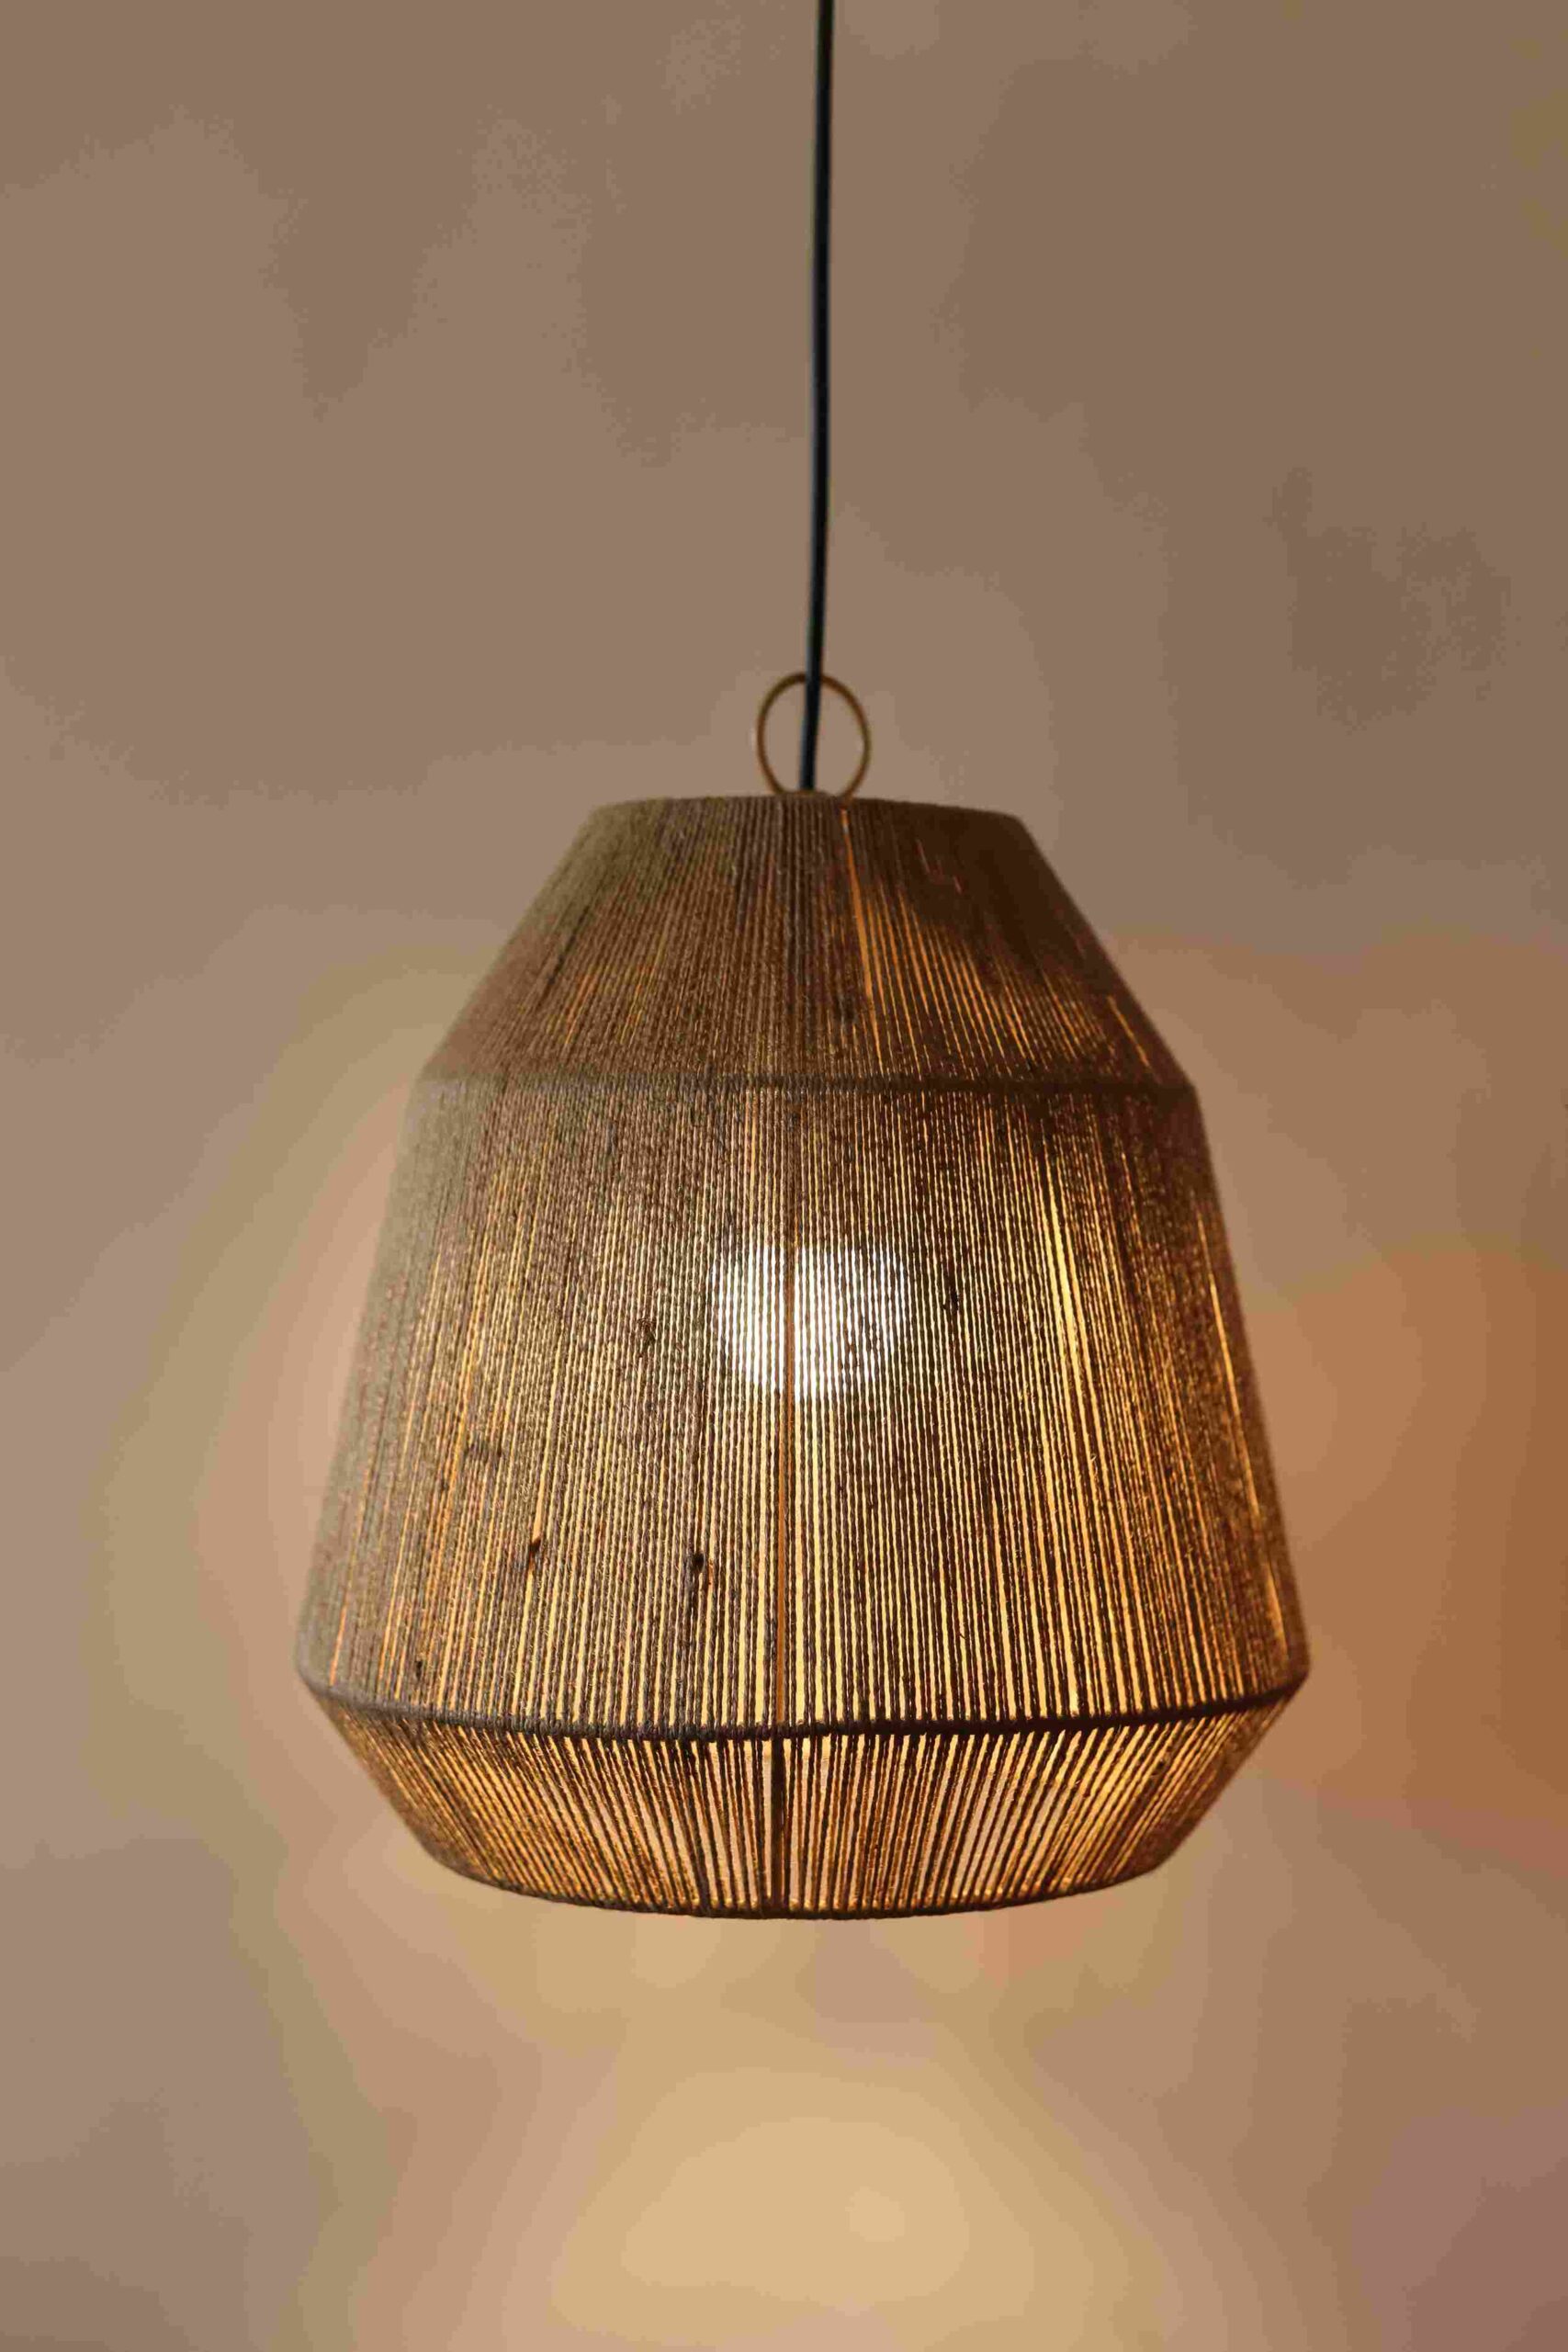 Buy Ceiling Lamp Online in India